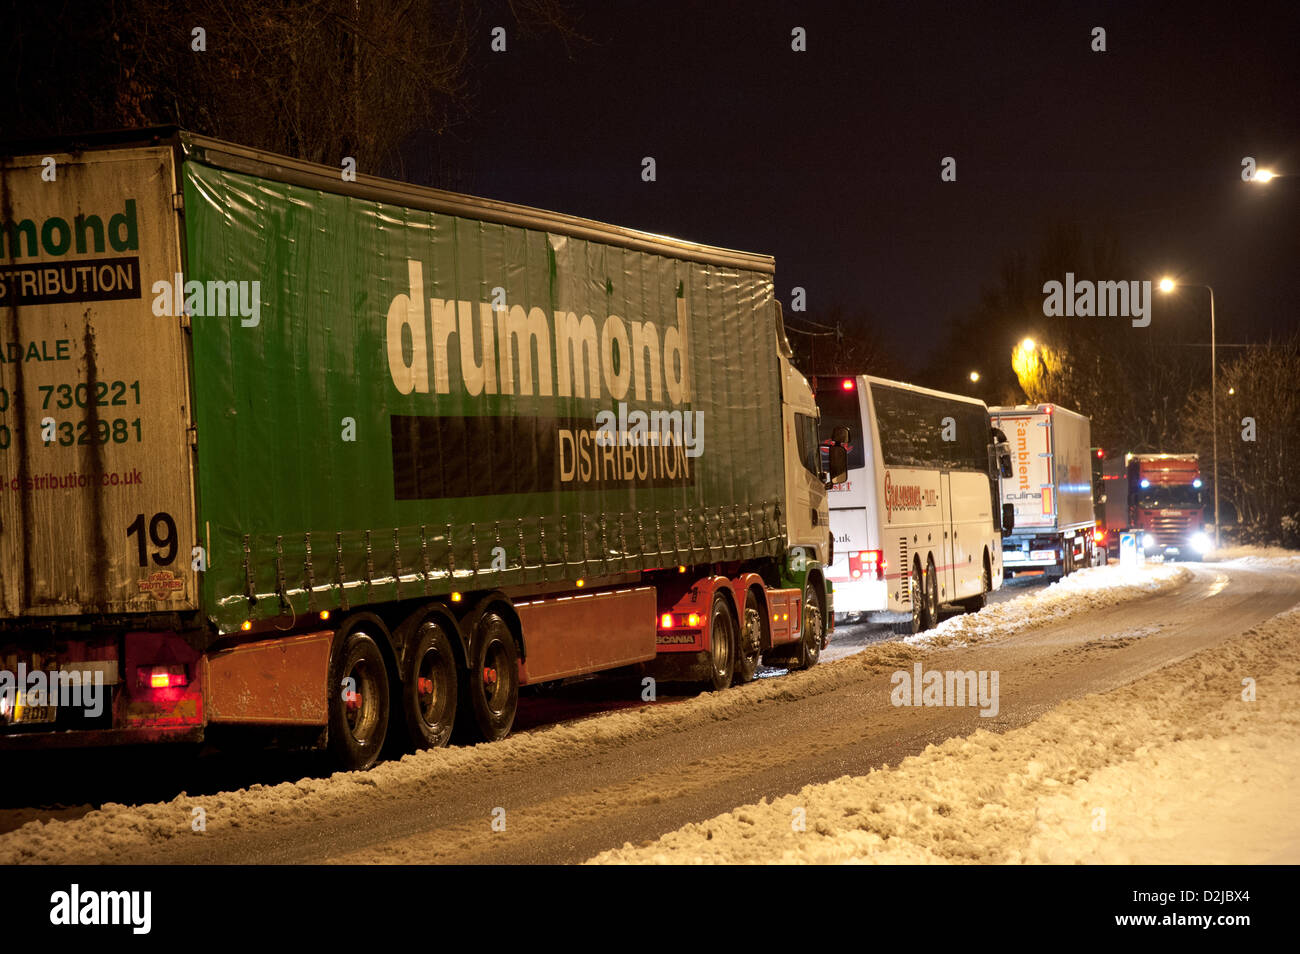 Standish, Wigan, Reino Unido. El 26 de enero de 2013. Caos de tráfico como camiones esmerilar hasta pararse en Standish cerca de Wigan. Un pile-up en la autopista M6 significa que el tráfico se ha desviado hacia el norte, a lo largo de la A49 a través de Standish donde una combinación de nieve en 'Perspectiva' y accidentes del tráfico a conjest. Crédito: John Morris / Alamy Live News Foto de stock